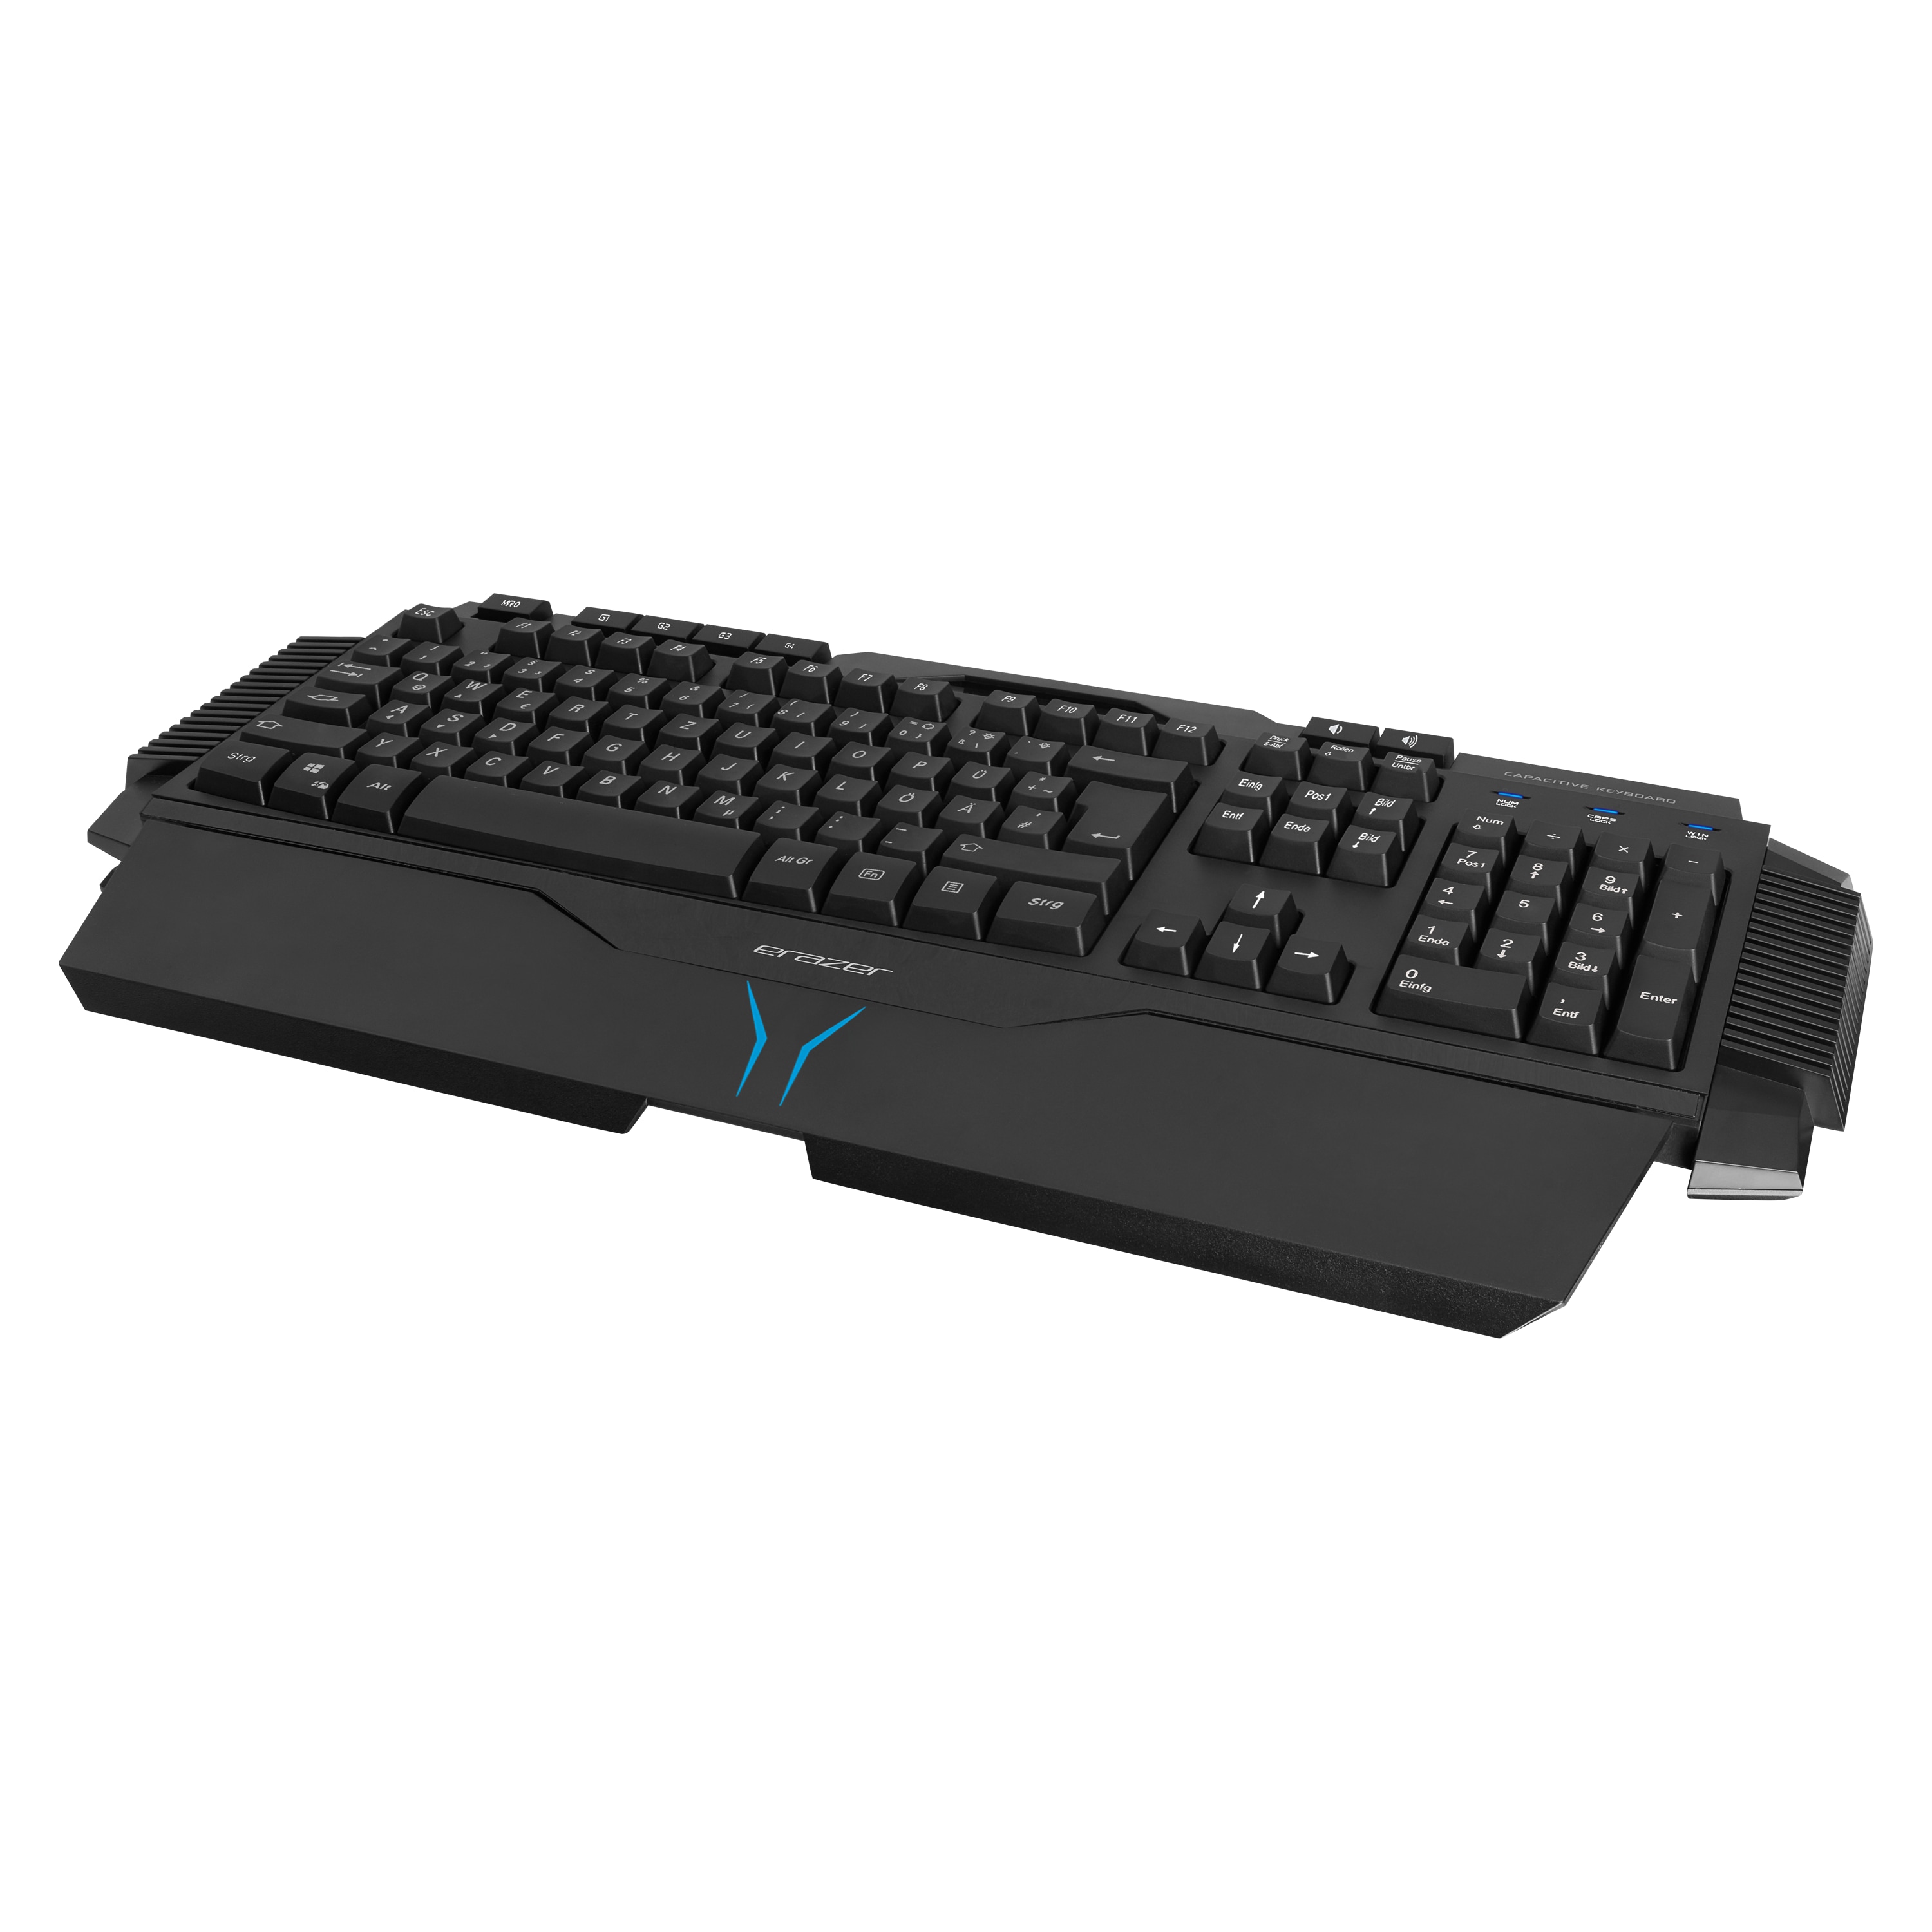 MEDION® ERAZER® X81025 Gaming Tastatur, präzise Tastenreaktion, Hintergrundbeleuchtung, 100% Anti-Ghosting-Funktion